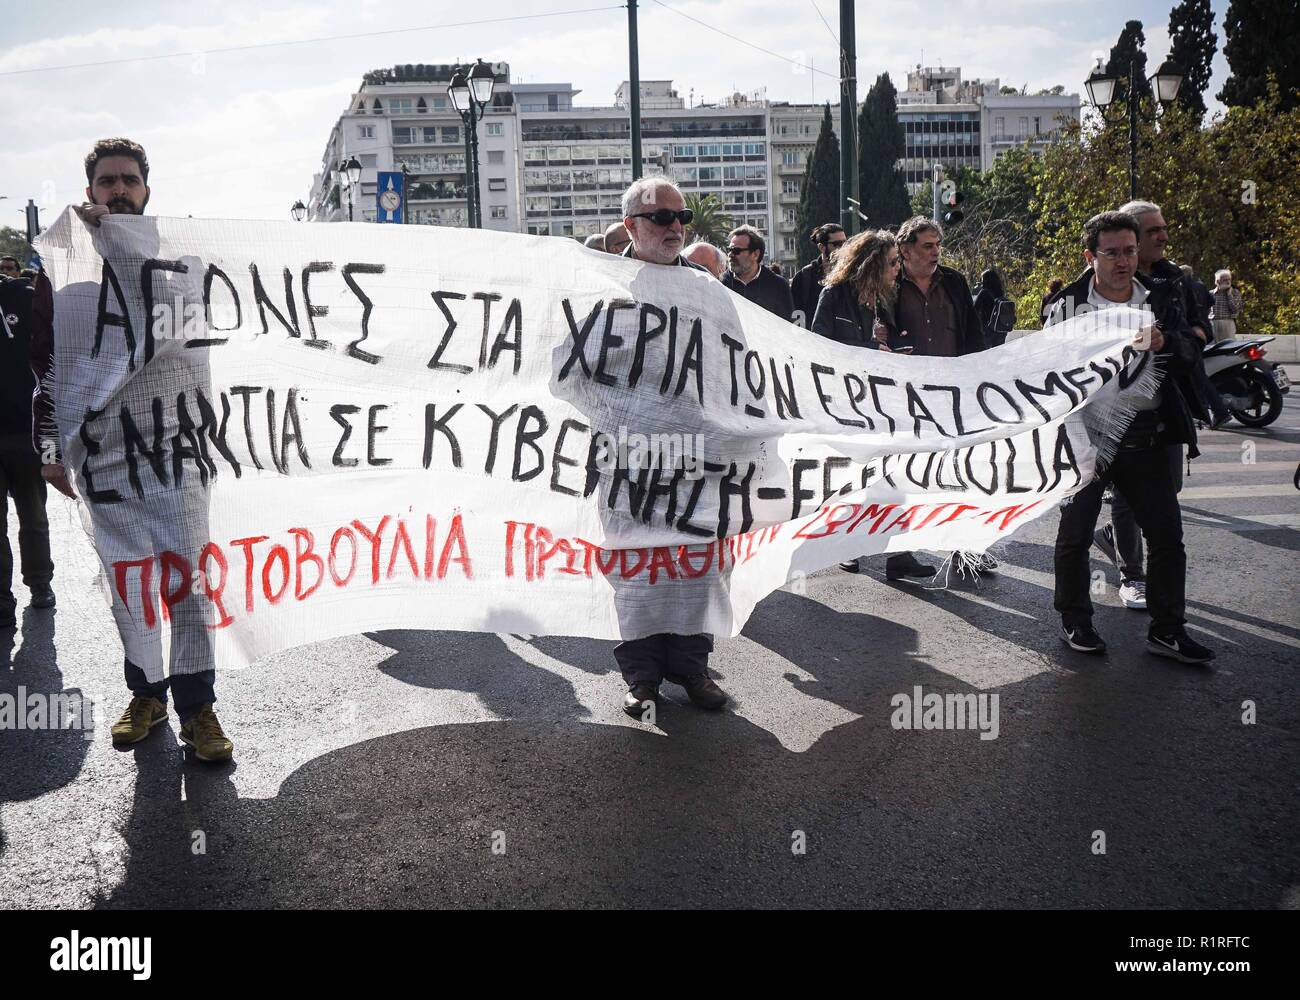 Athen, Griechenland. 14 Nov, 2018. Beamter werden gesehen, halten ein Banner während eines 24-stündigen Streik. Die Beamten in einen 24-stündigen Streik gegen die Sparmaßnahmen zu protestieren und für eine Erhöhung der Löhne und Renten zu verlangen. Credit: Ioannis Alexopoulos/SOPA Images/ZUMA Draht/Alamy leben Nachrichten Stockfoto